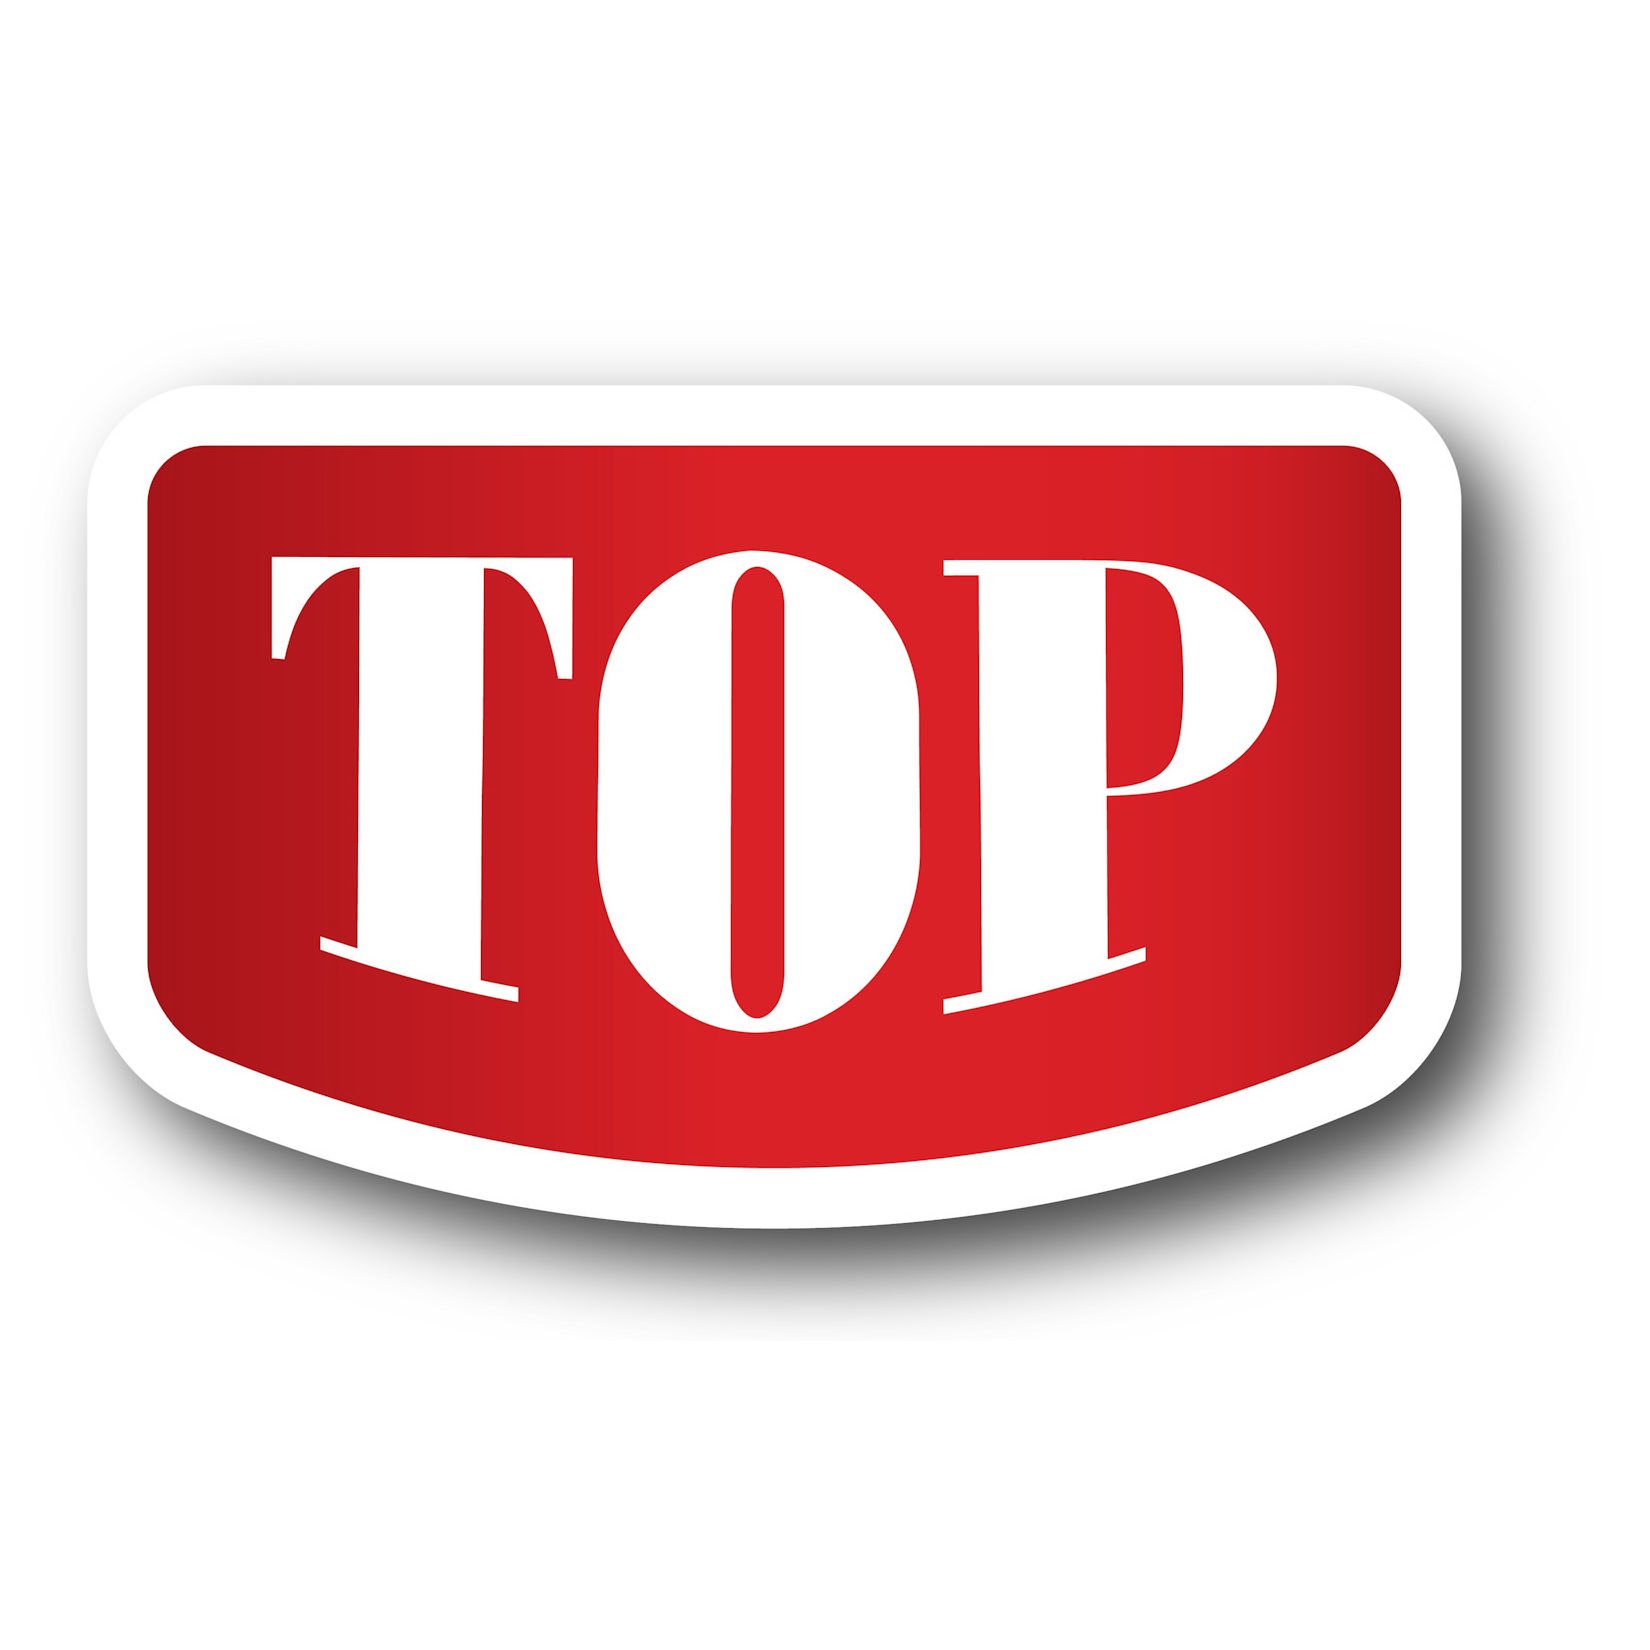 Trademark Logo TOP